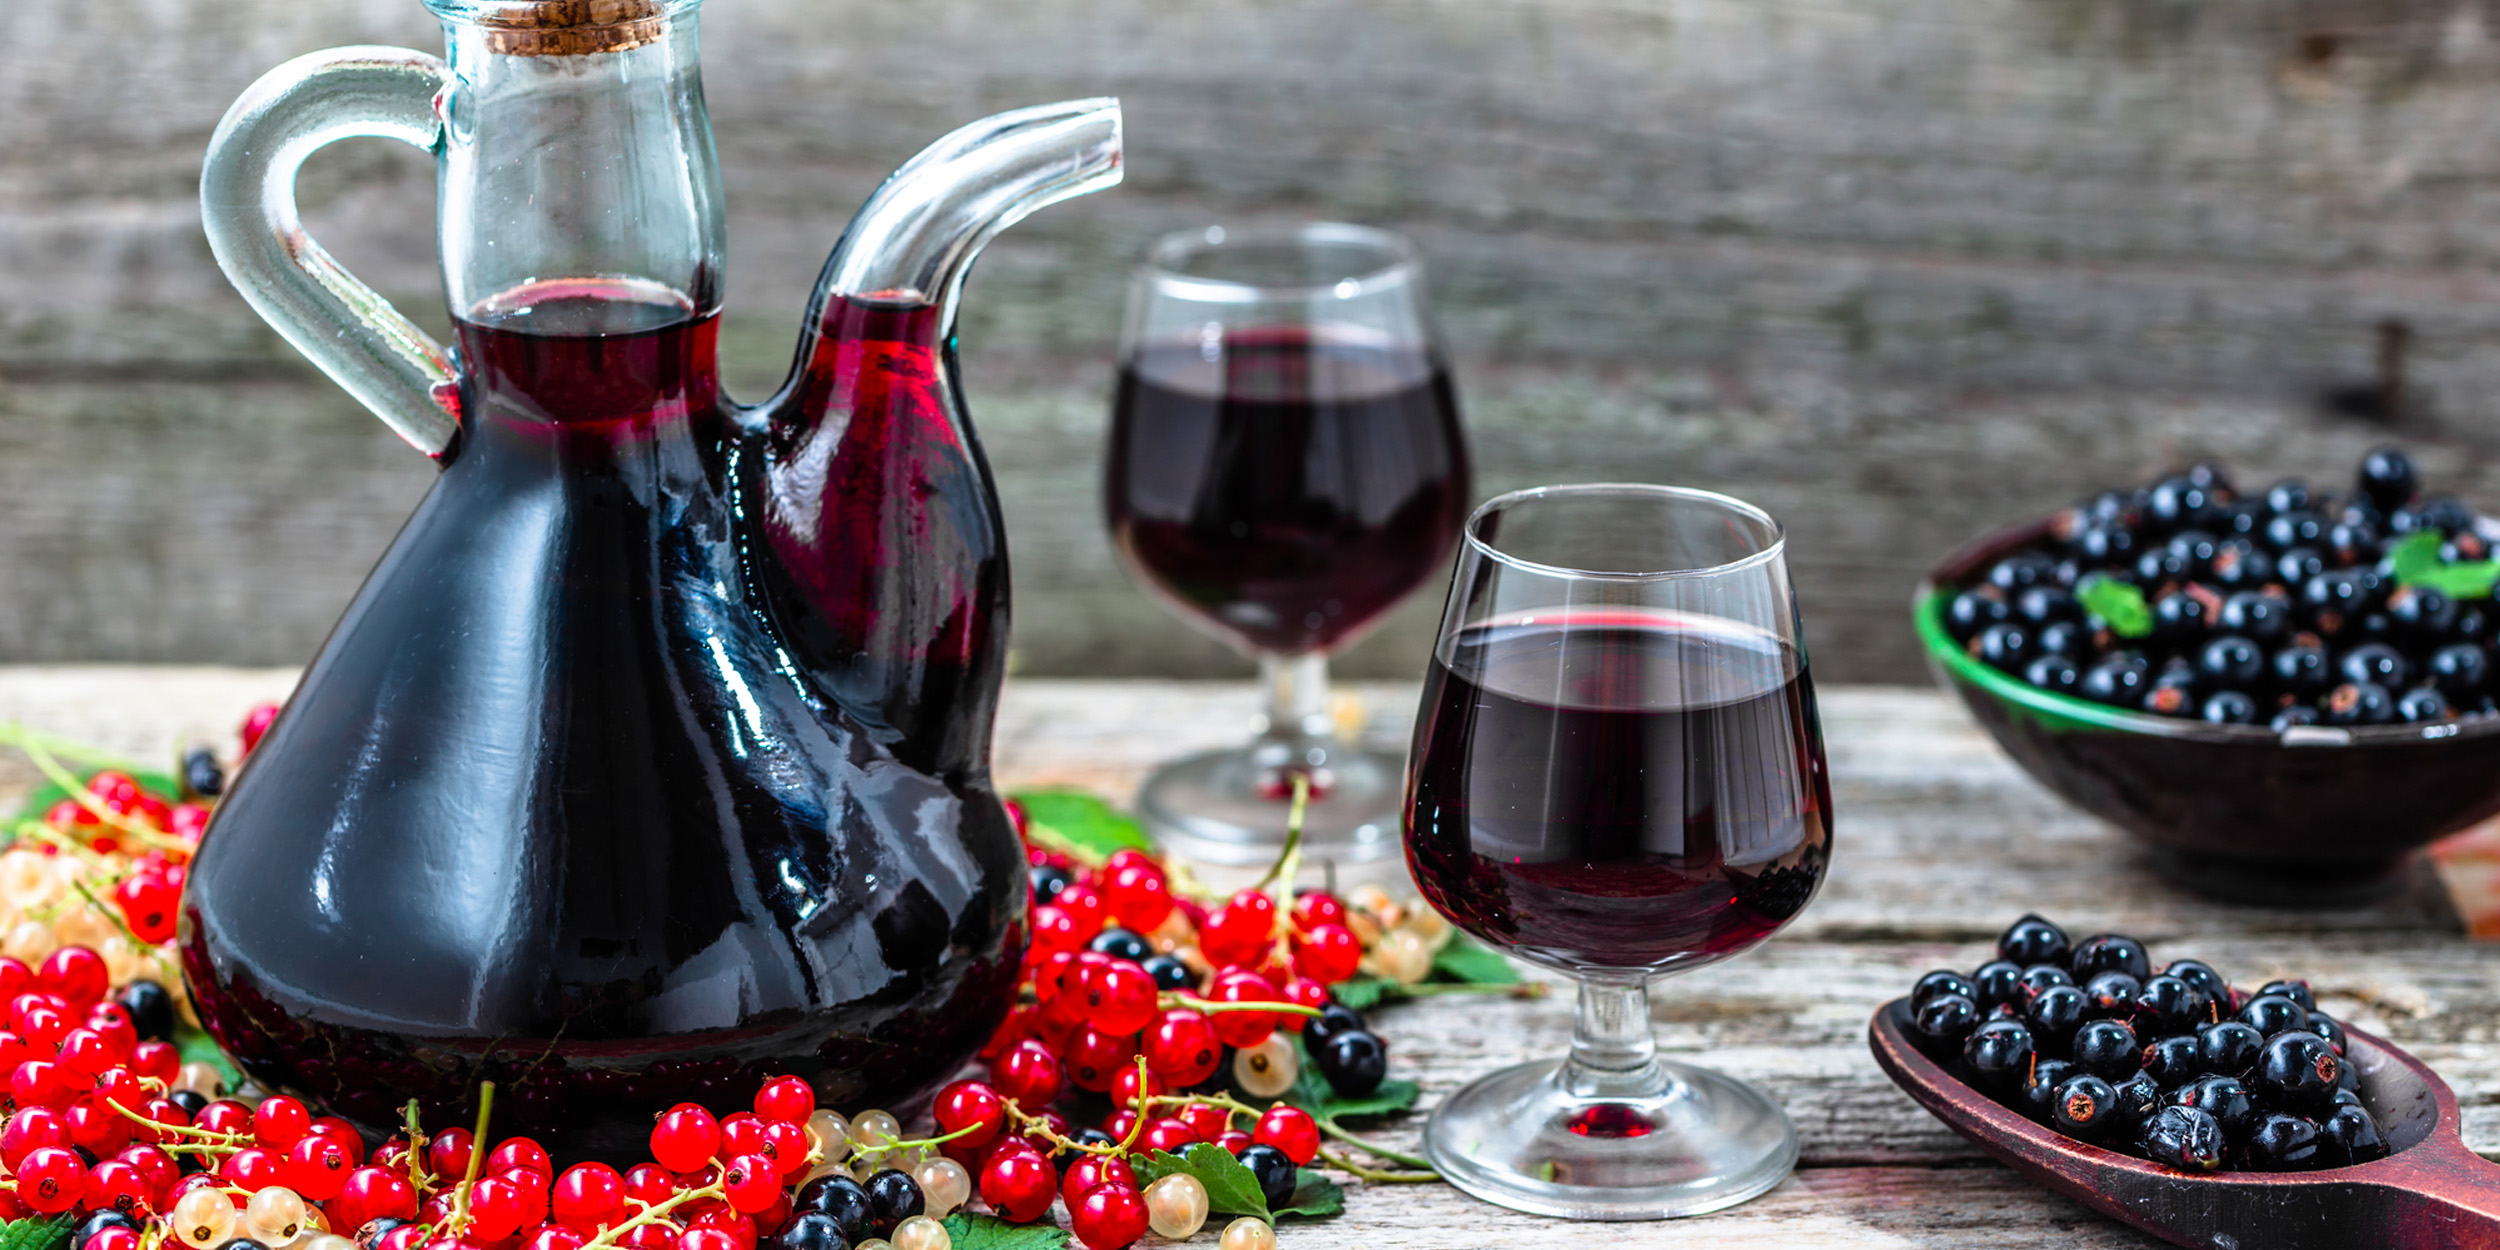 Натуральное вино из винограда по красному способу без добавления сахара